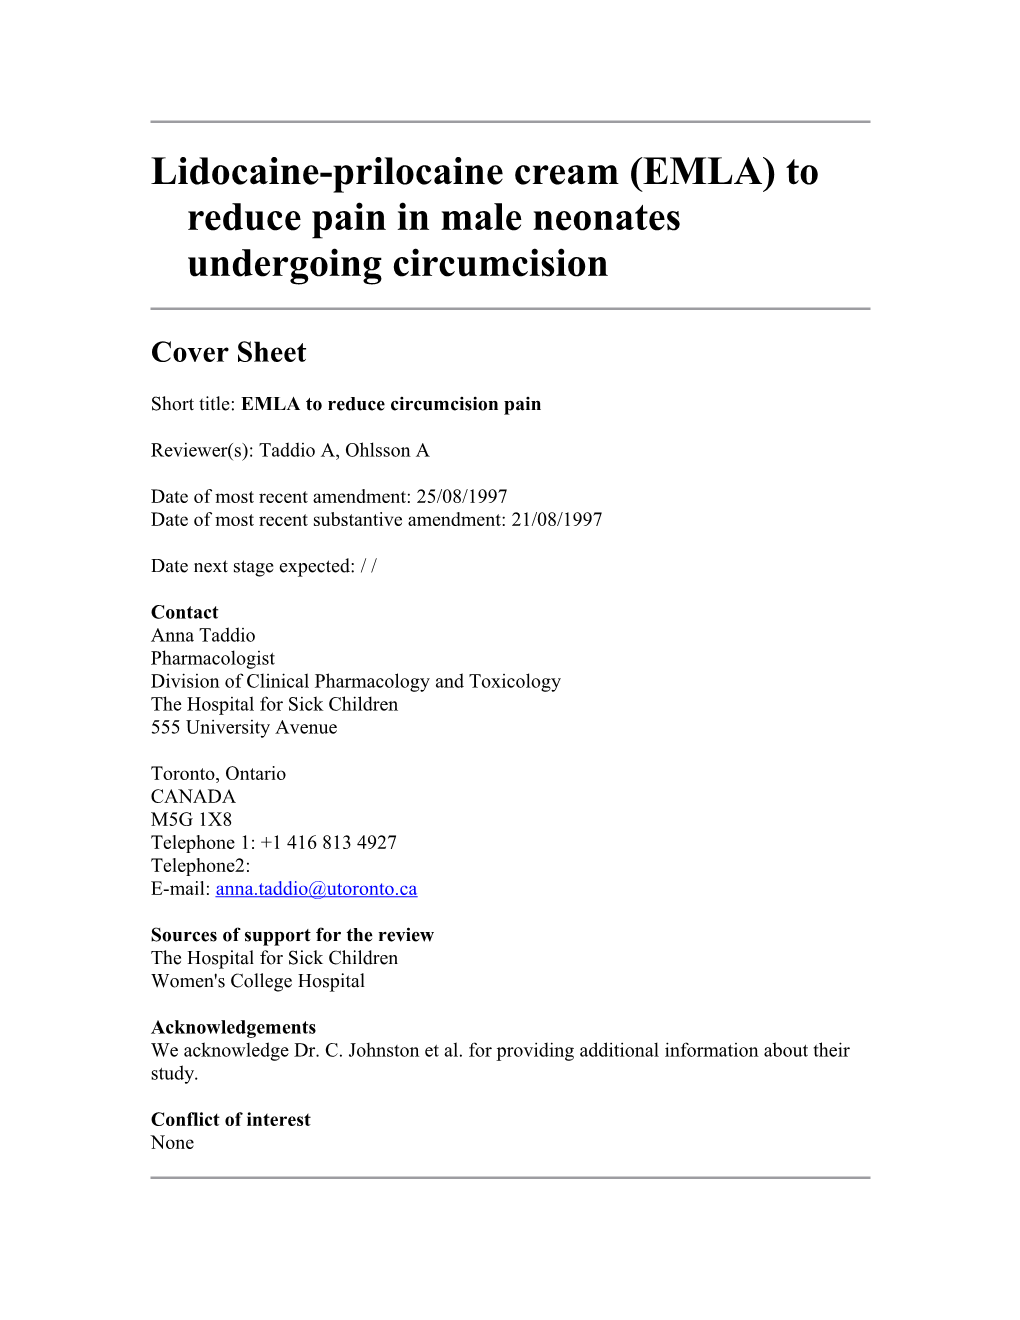 Lidocaine-Prilocaine Cream (EMLA) to Reduce Pain in Male Neonates Undergoing Circumcision